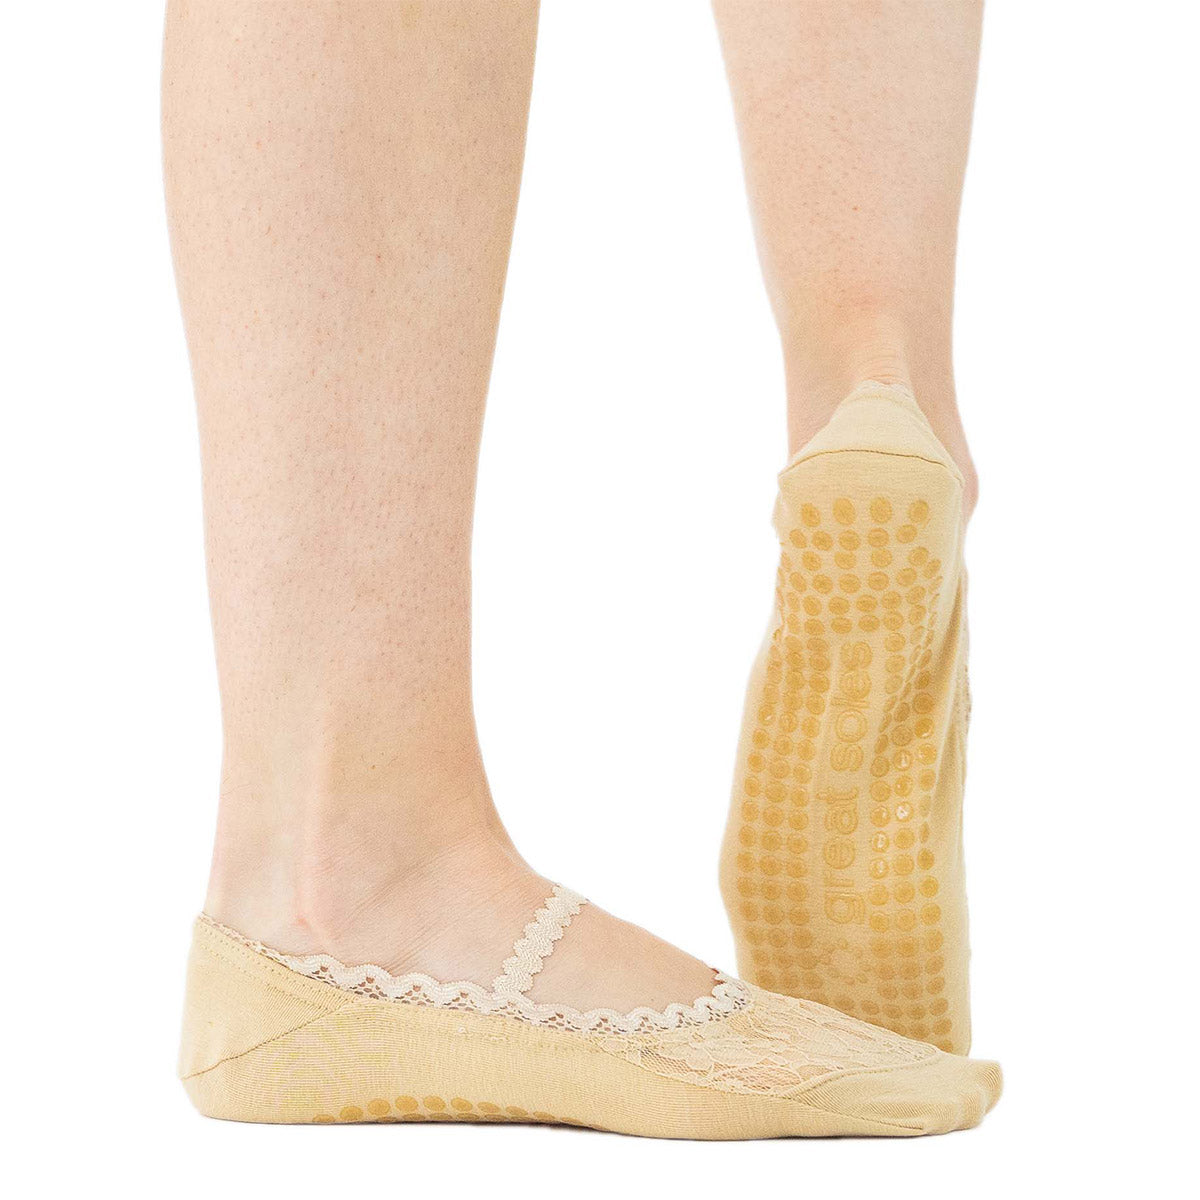 Low Cut Grip Socks for Sale, Buy Full Sole Grip Socks for Women